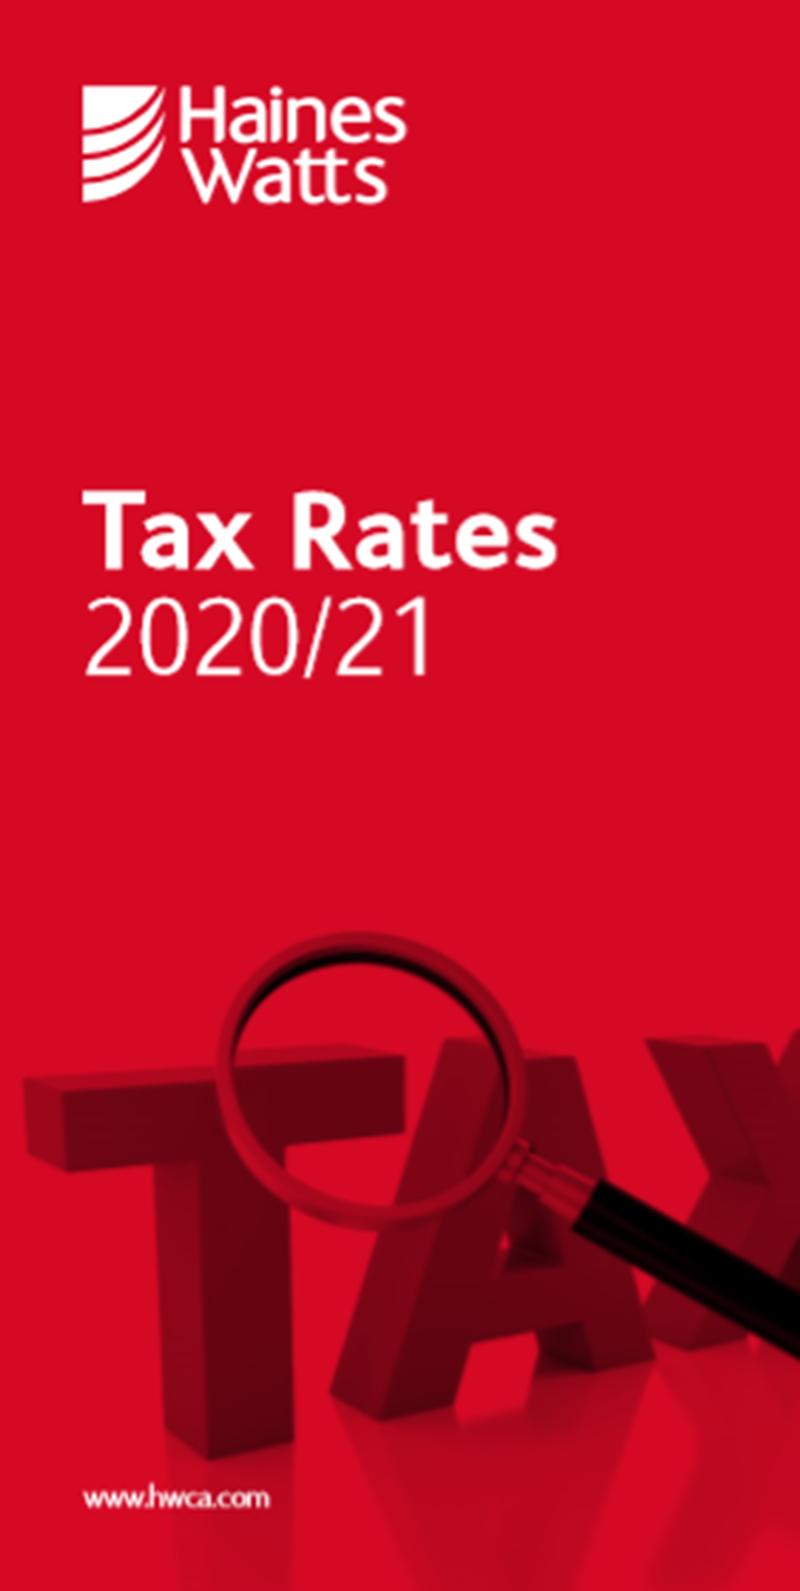 Tax Rates 2020/21